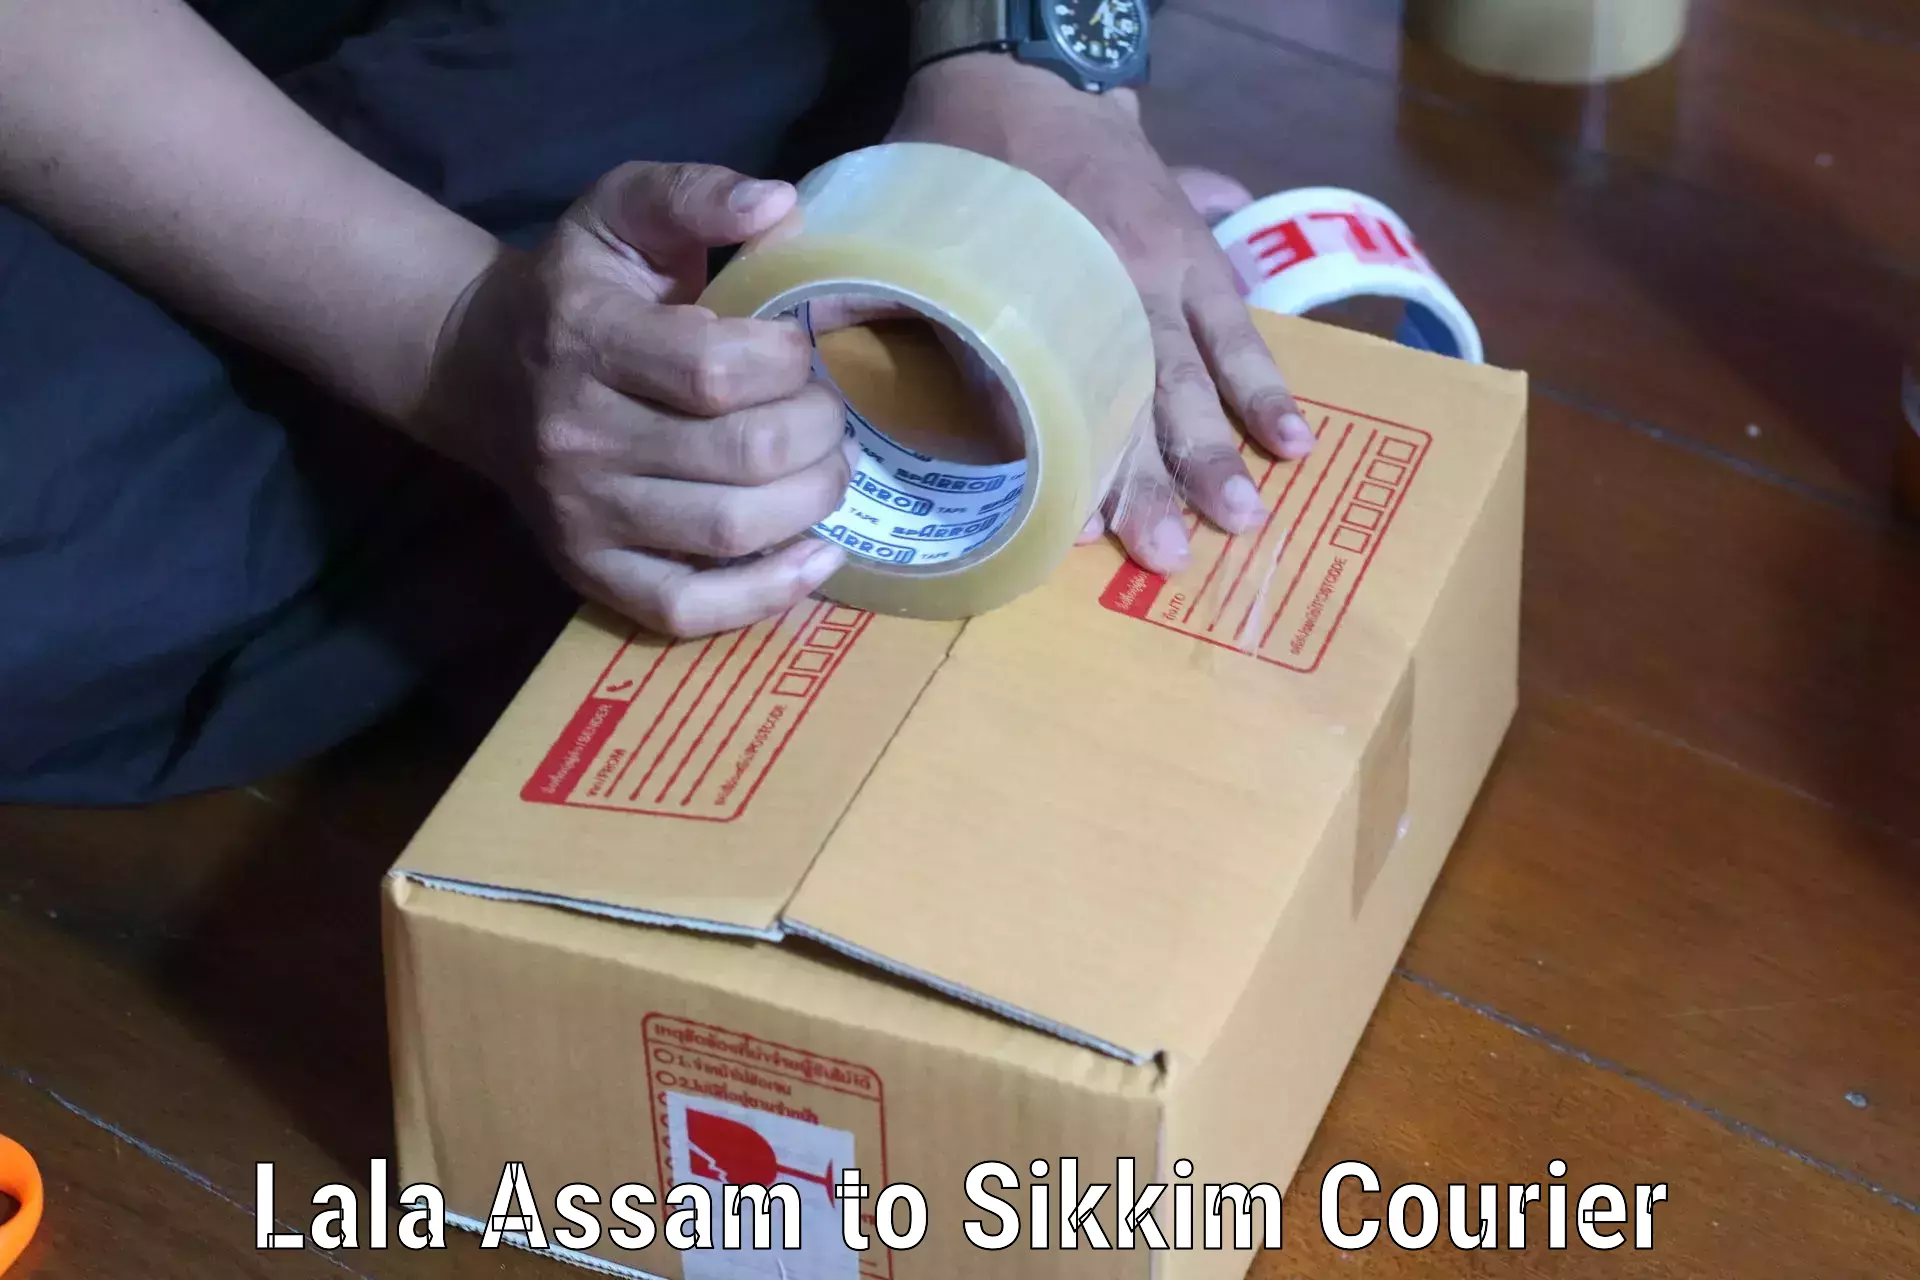 Bulk shipment in Lala Assam to Jorethang